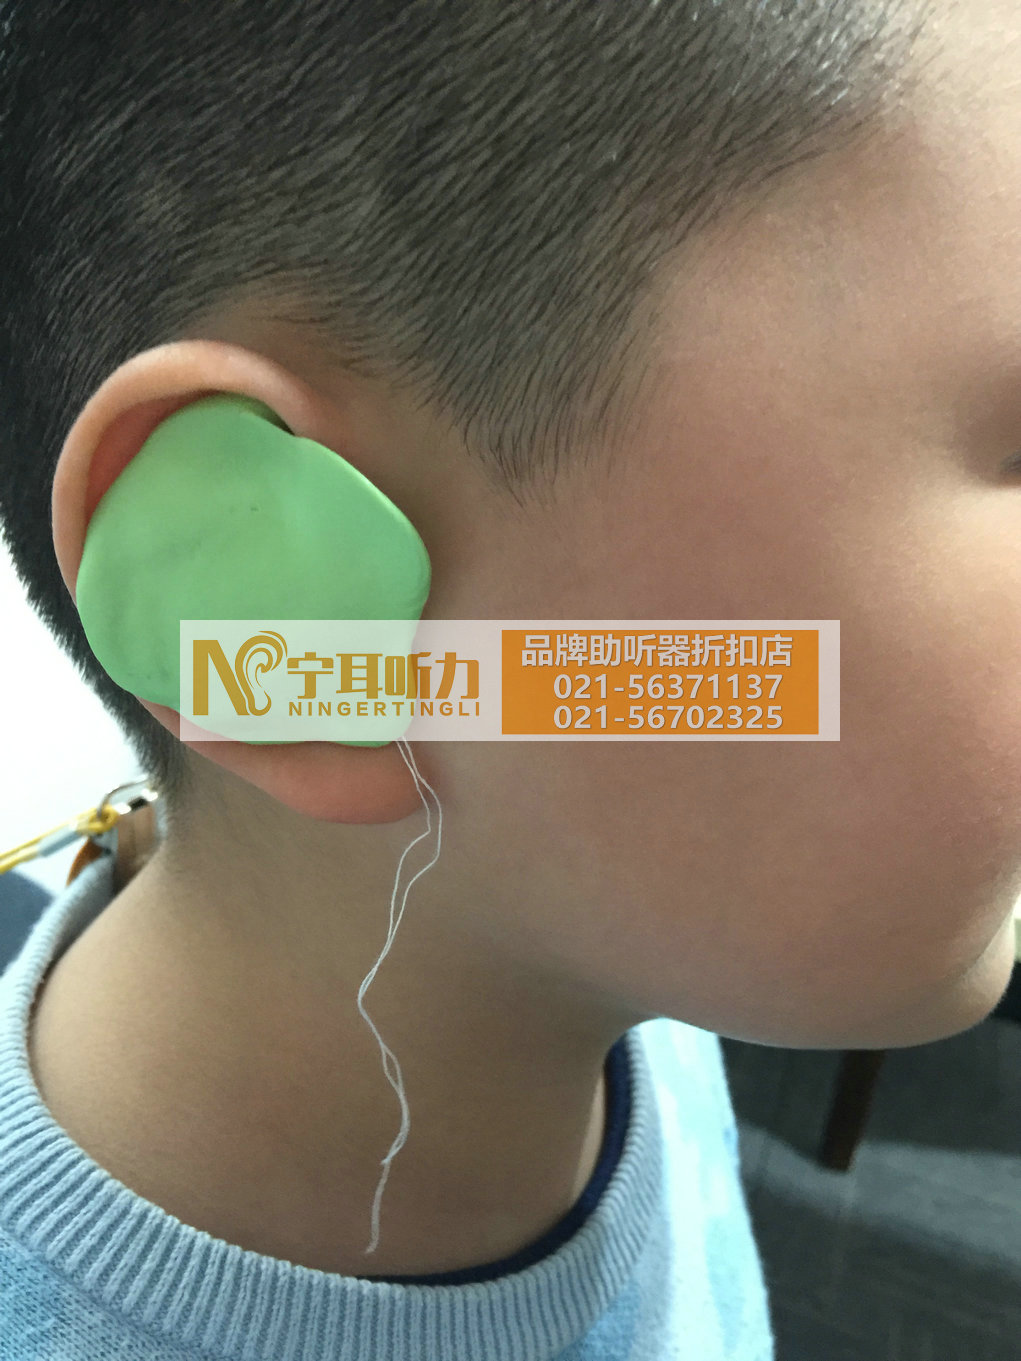 上海斯达克儿童助听器专卖店